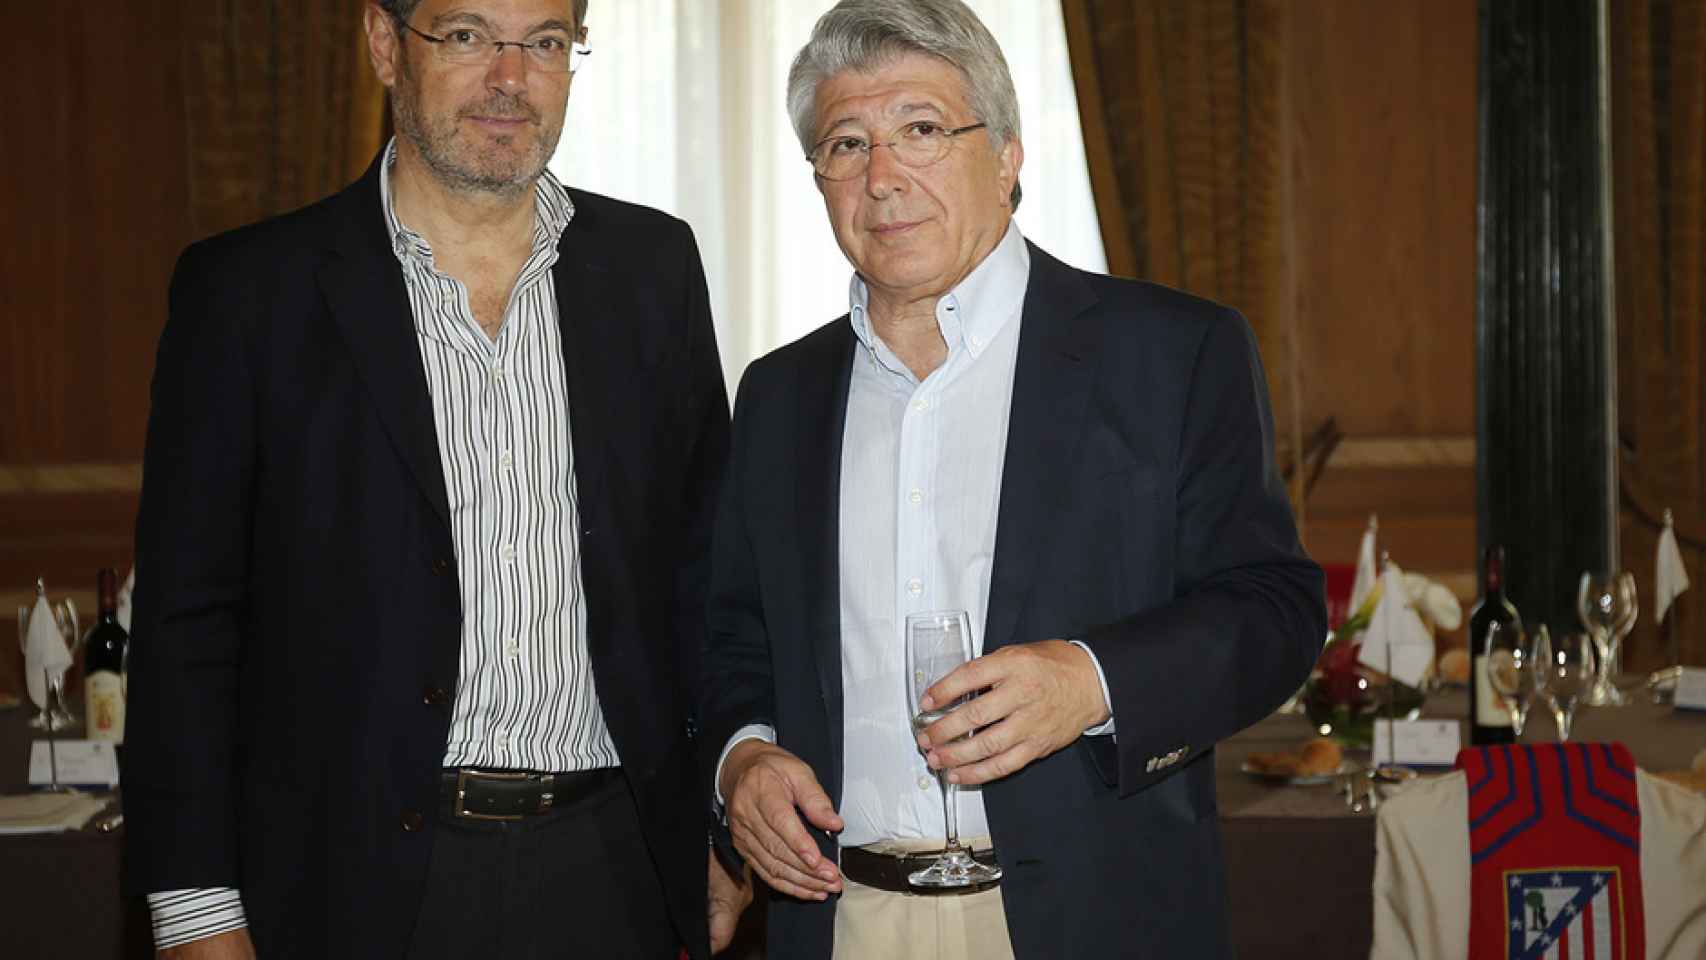 Rafael Catalá y Enrique Cerezo en la comida organizada por el Atlético en Milán el 28 de abril